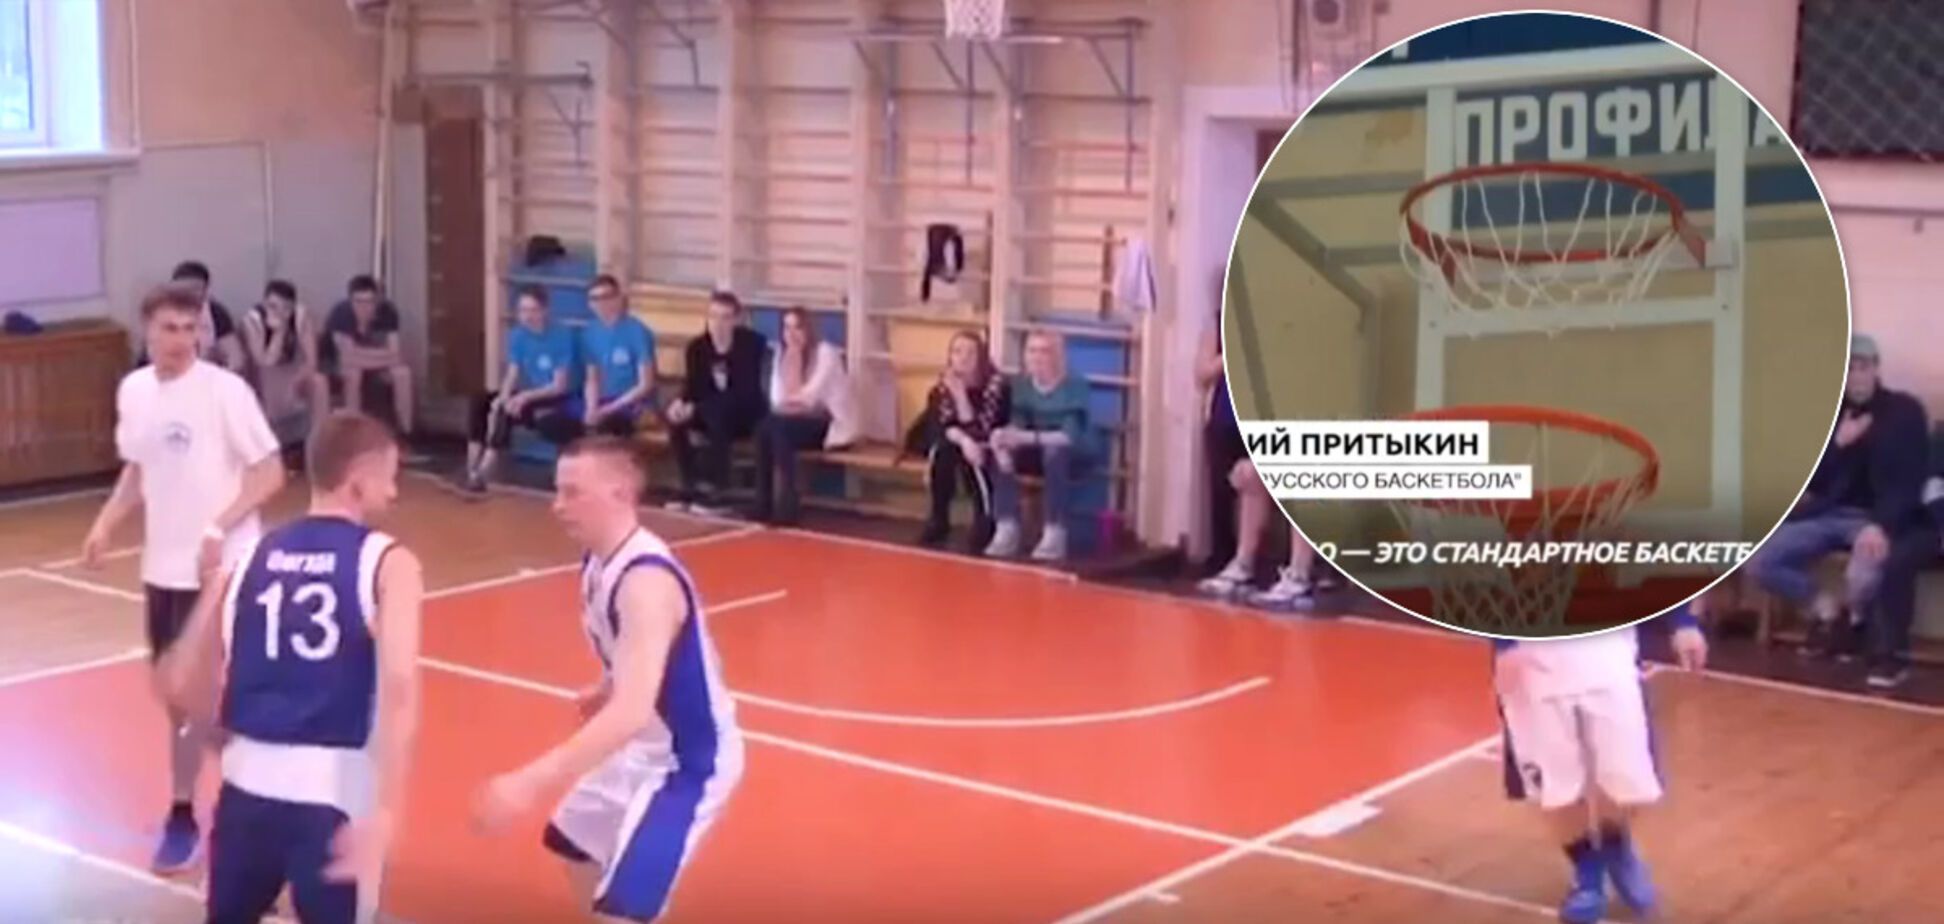 В России изобрели новый 'русский баскетбол' с четырьмя кольцами